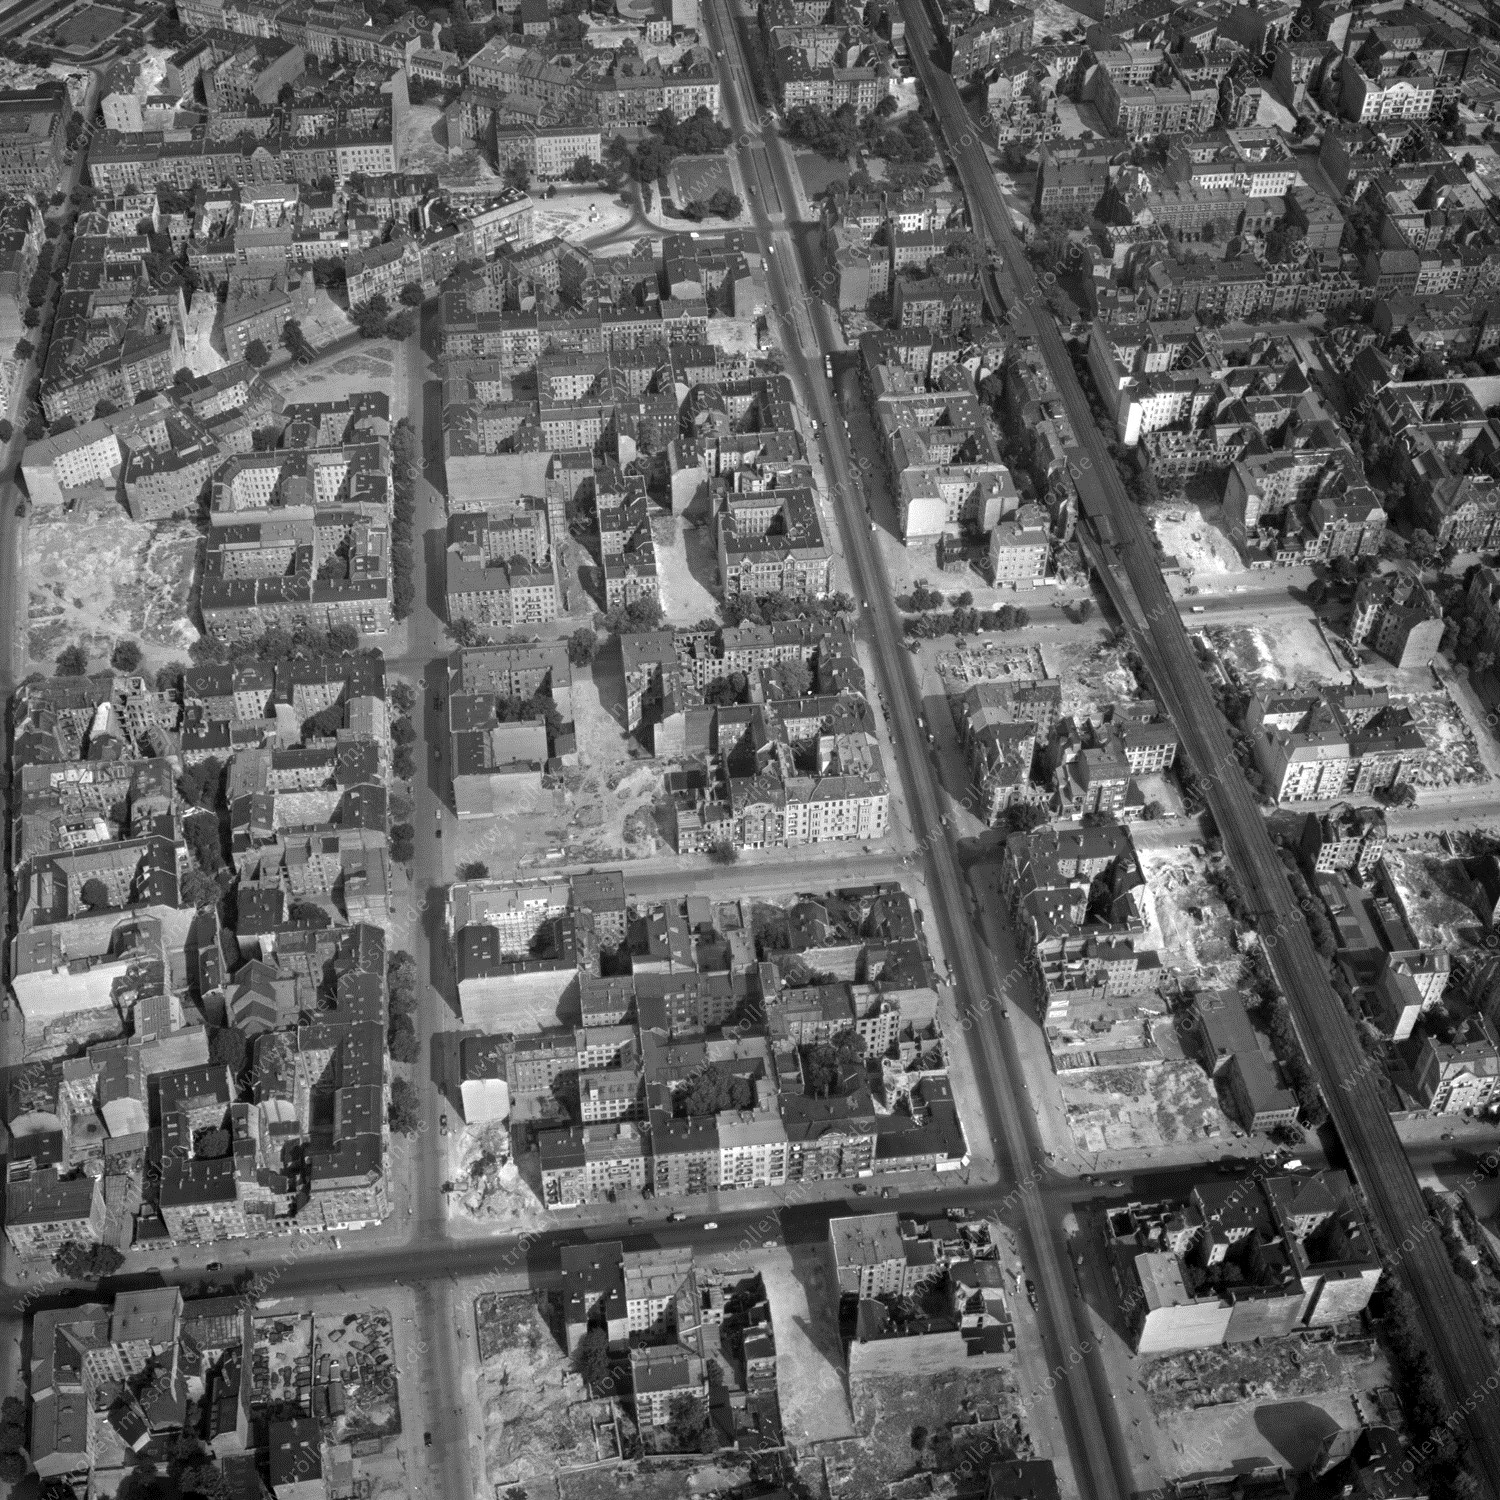 Alte Fotos und Luftbilder von Berlin - Luftbildaufnahme Nr. 03 - Historische Luftaufnahmen von West-Berlin aus dem Jahr 1954 - Flugstrecke Tango